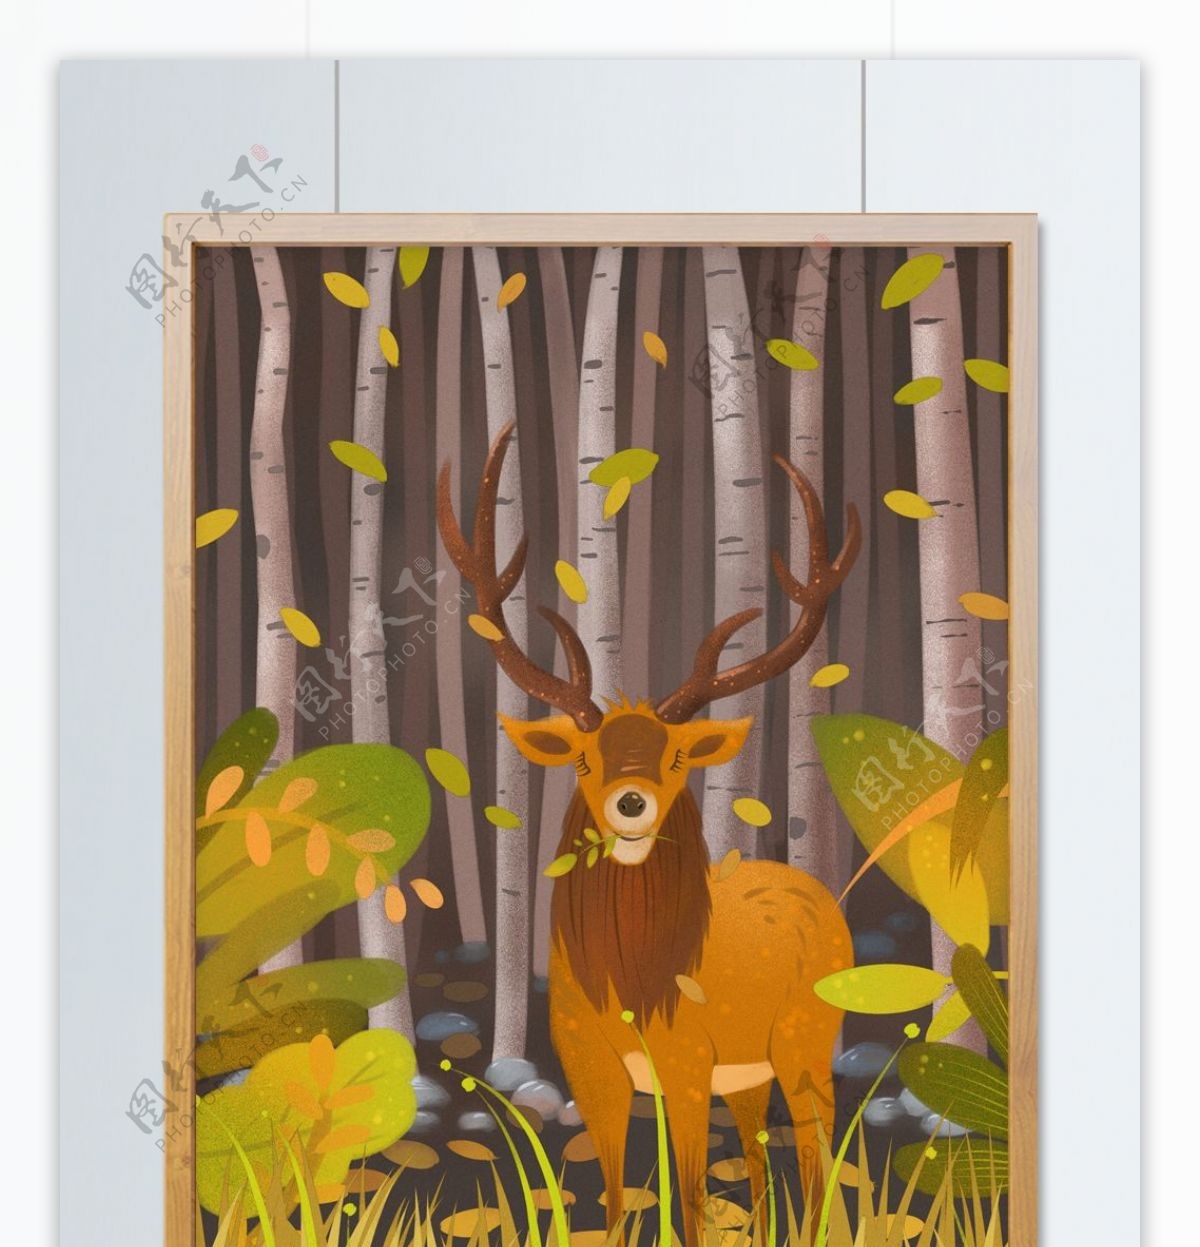 林深时见鹿白桦林里的巨鹿肌理插画